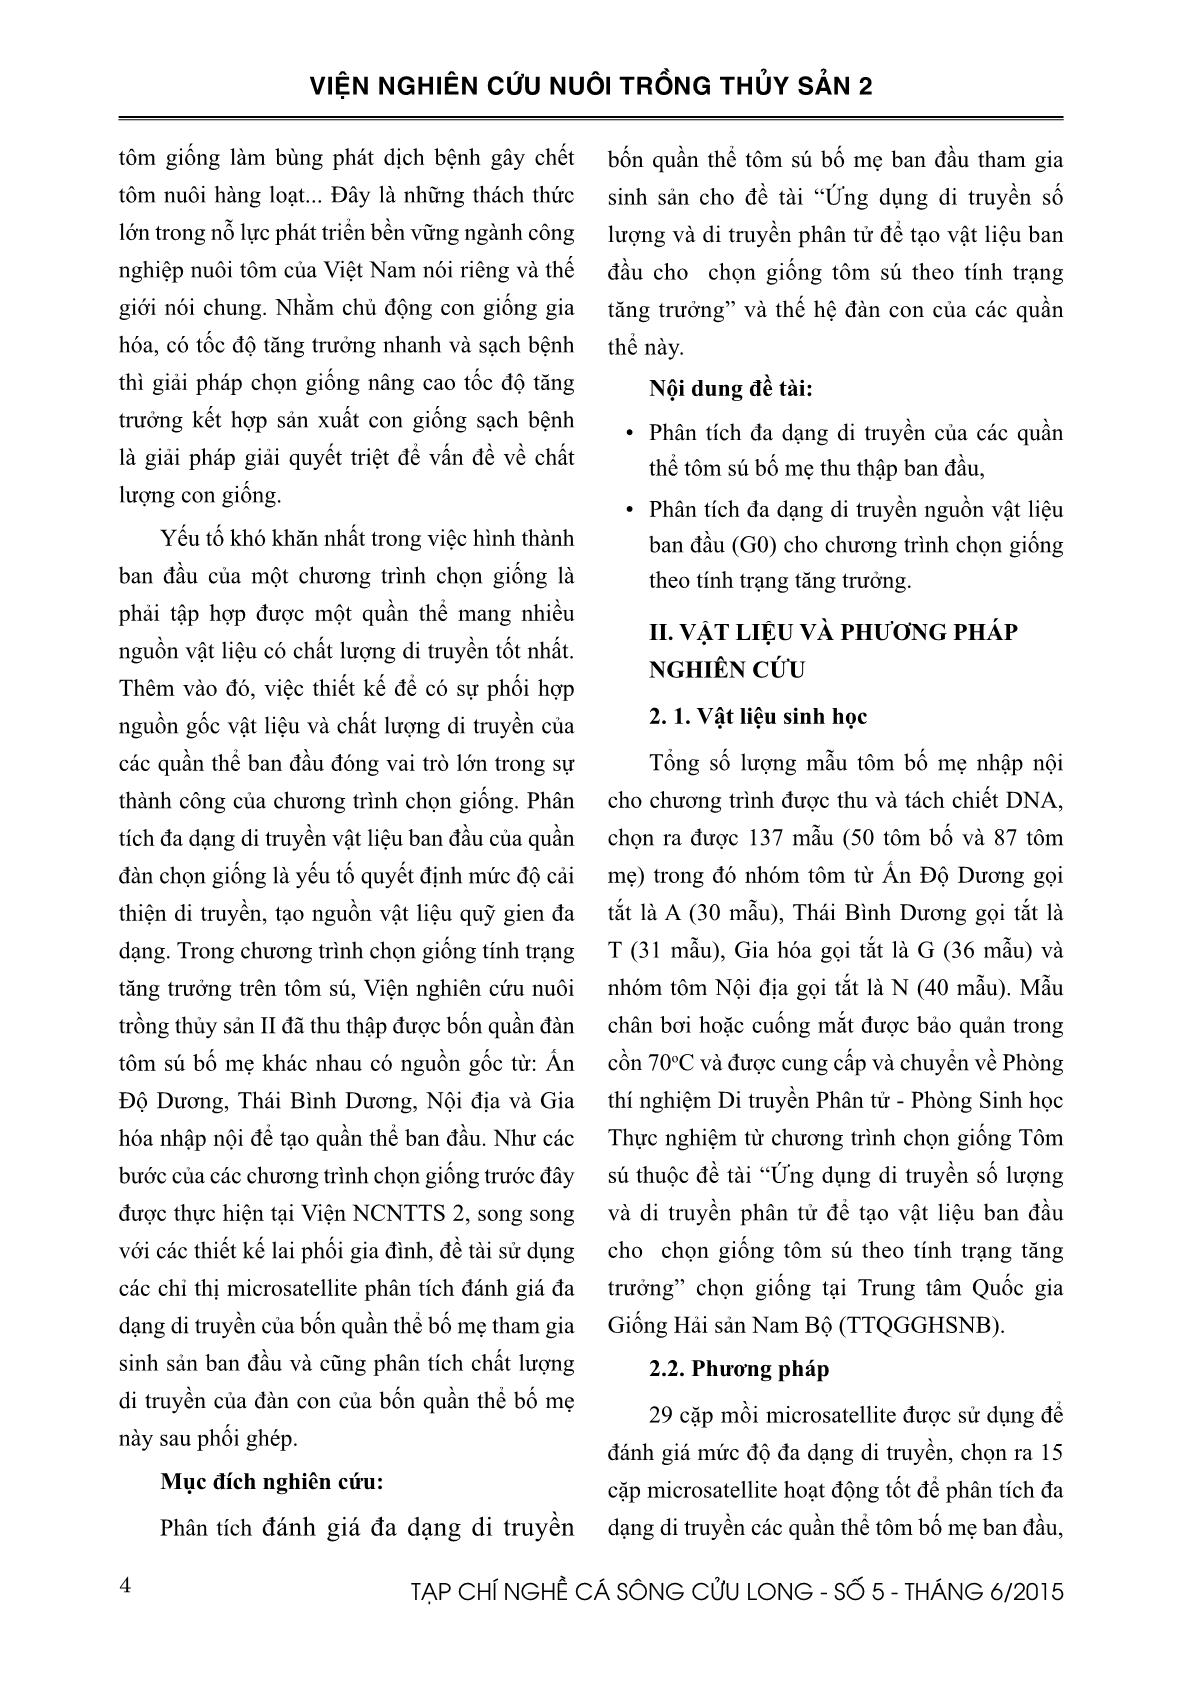 Tạp chí Nghề cá sông Cửu Long - Số 05/2015 trang 4